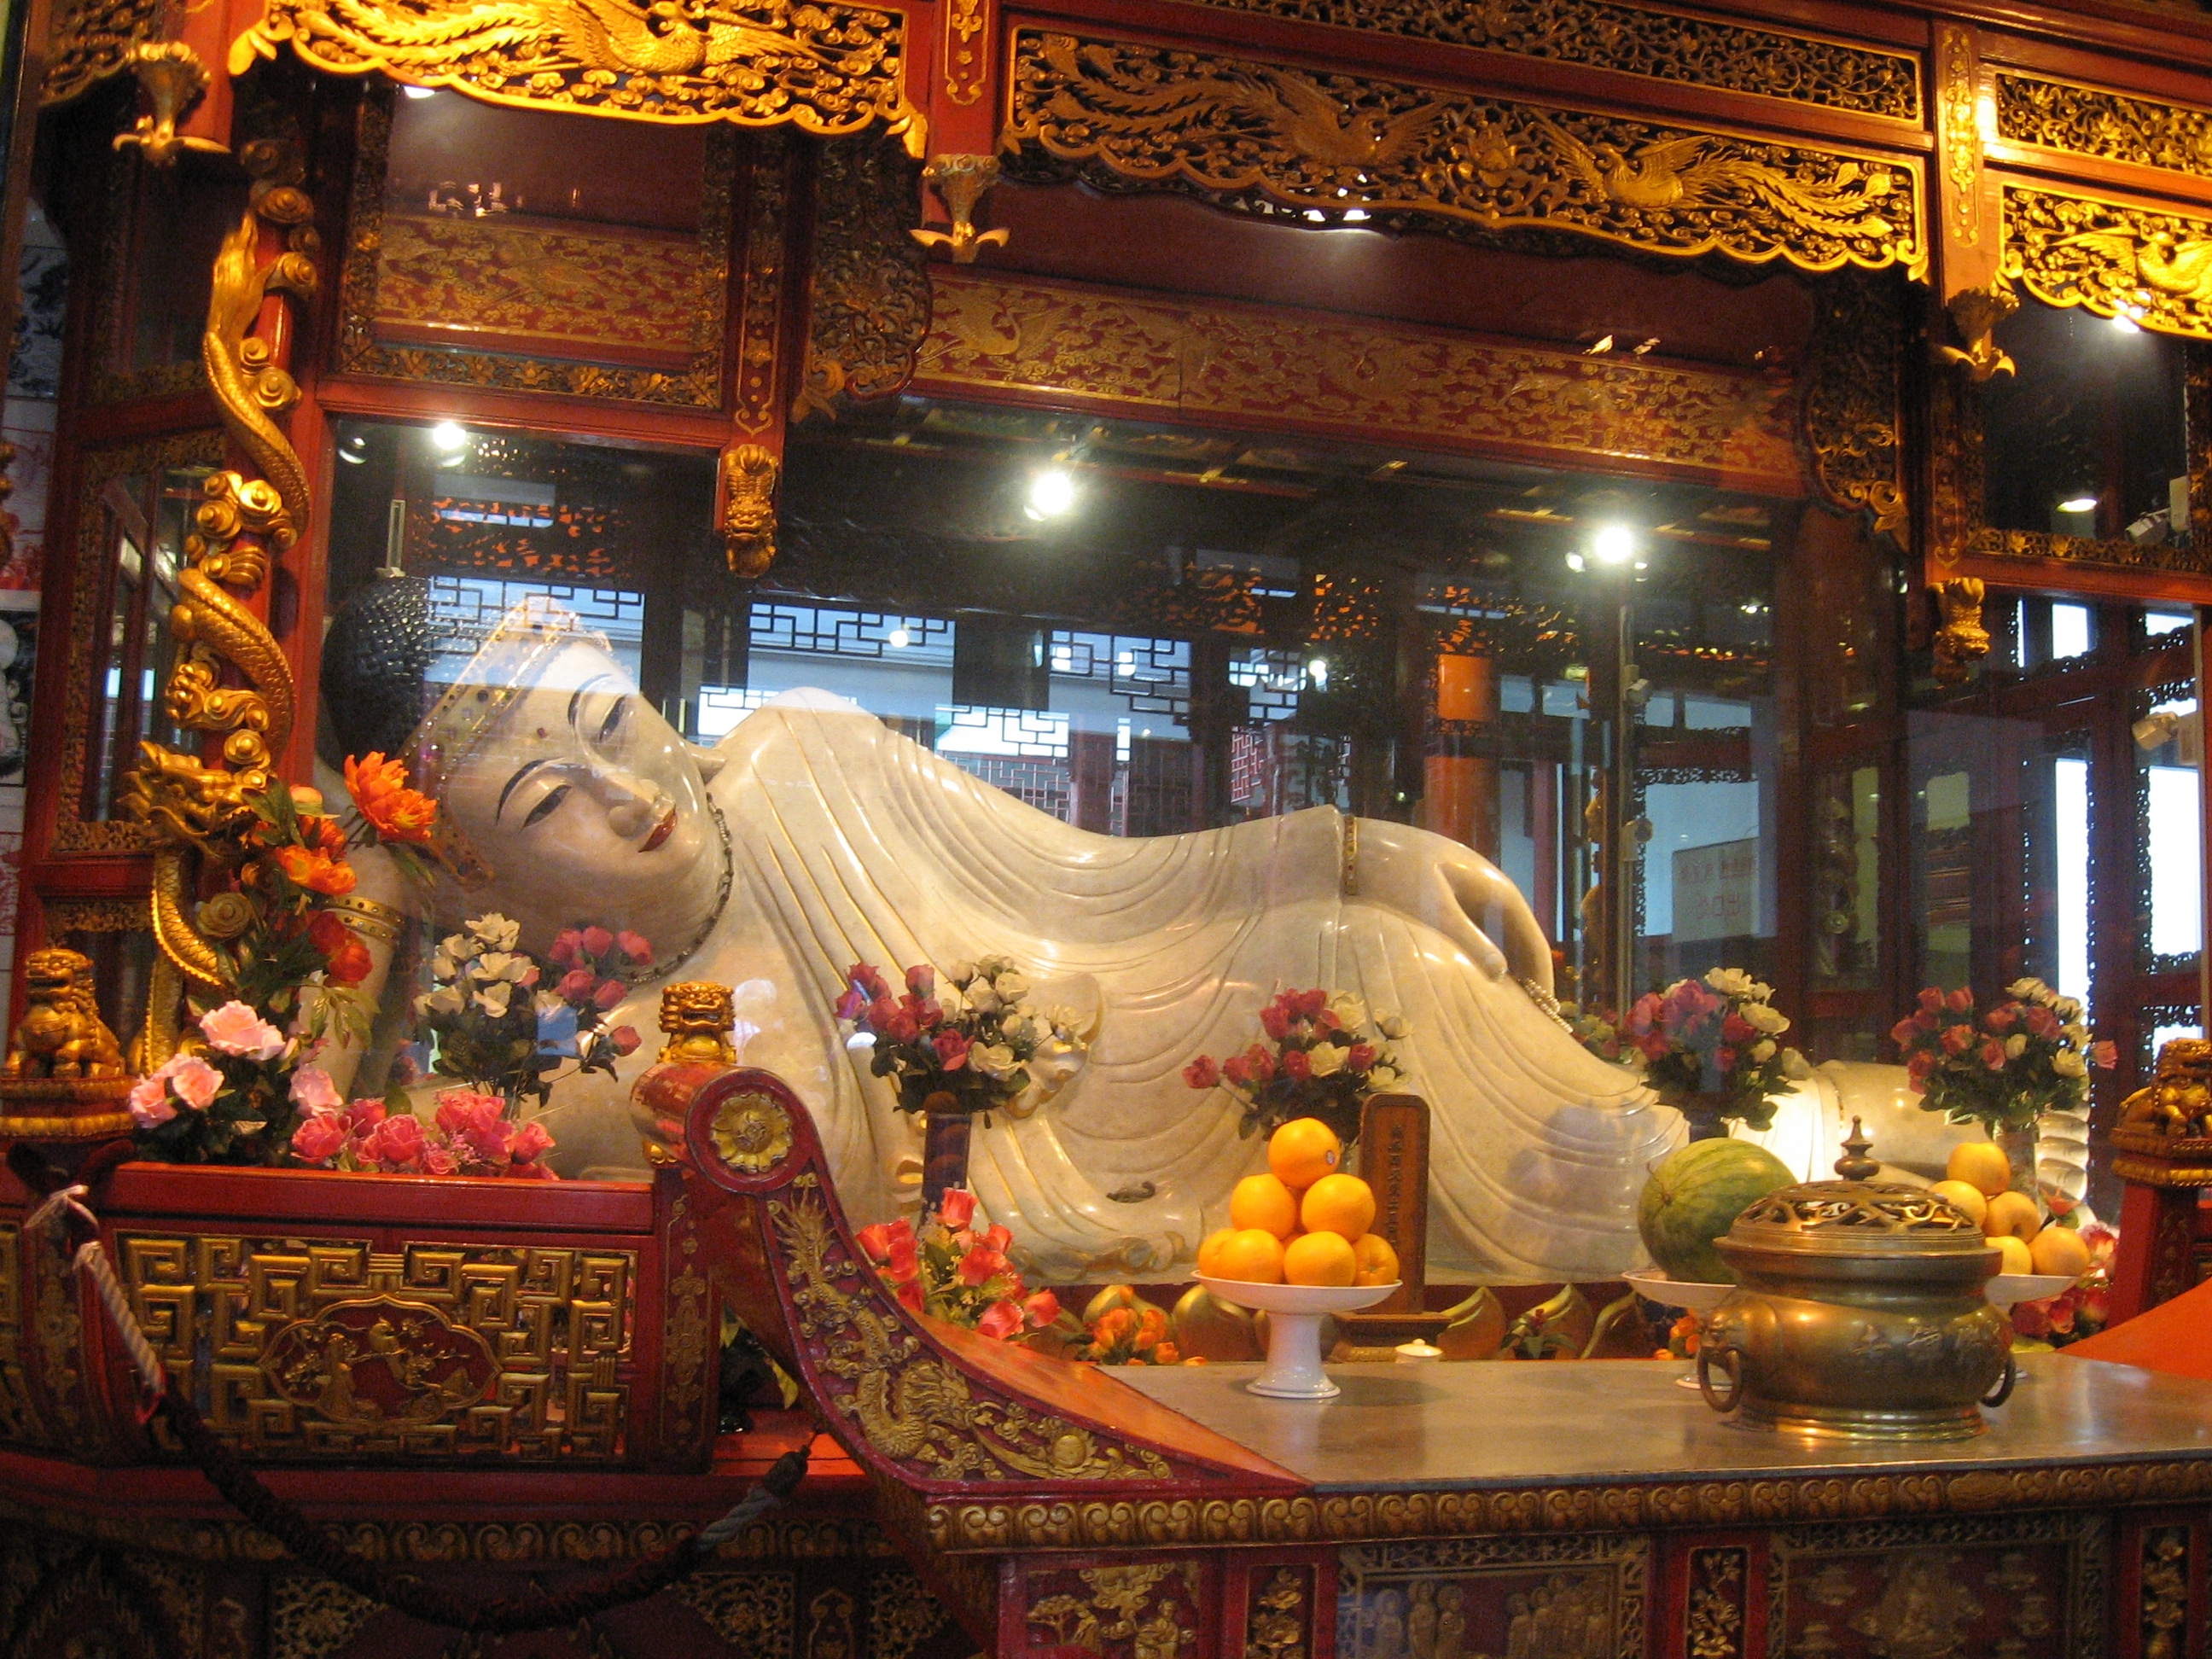 Statue_of_lying_Buddha_china.JPG